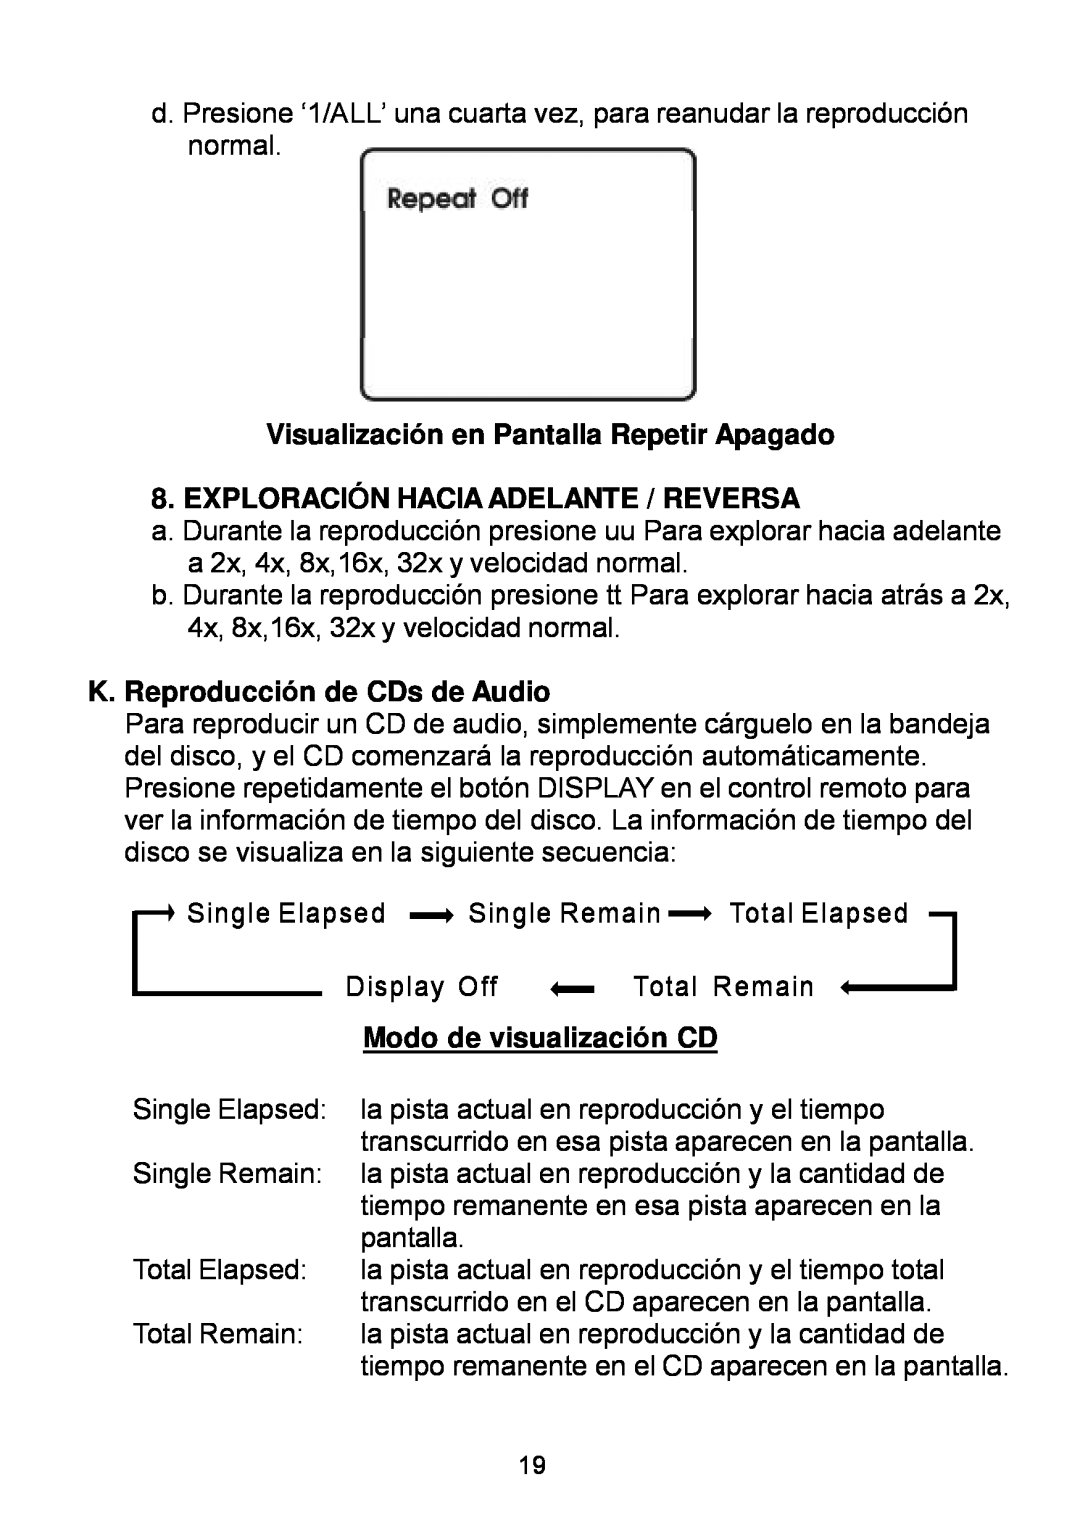 Audiovox D1929B Visualización en Pantalla Repetir Apagado, Exploración Hacia Adelante / Reversa, Modo de visualización CD 